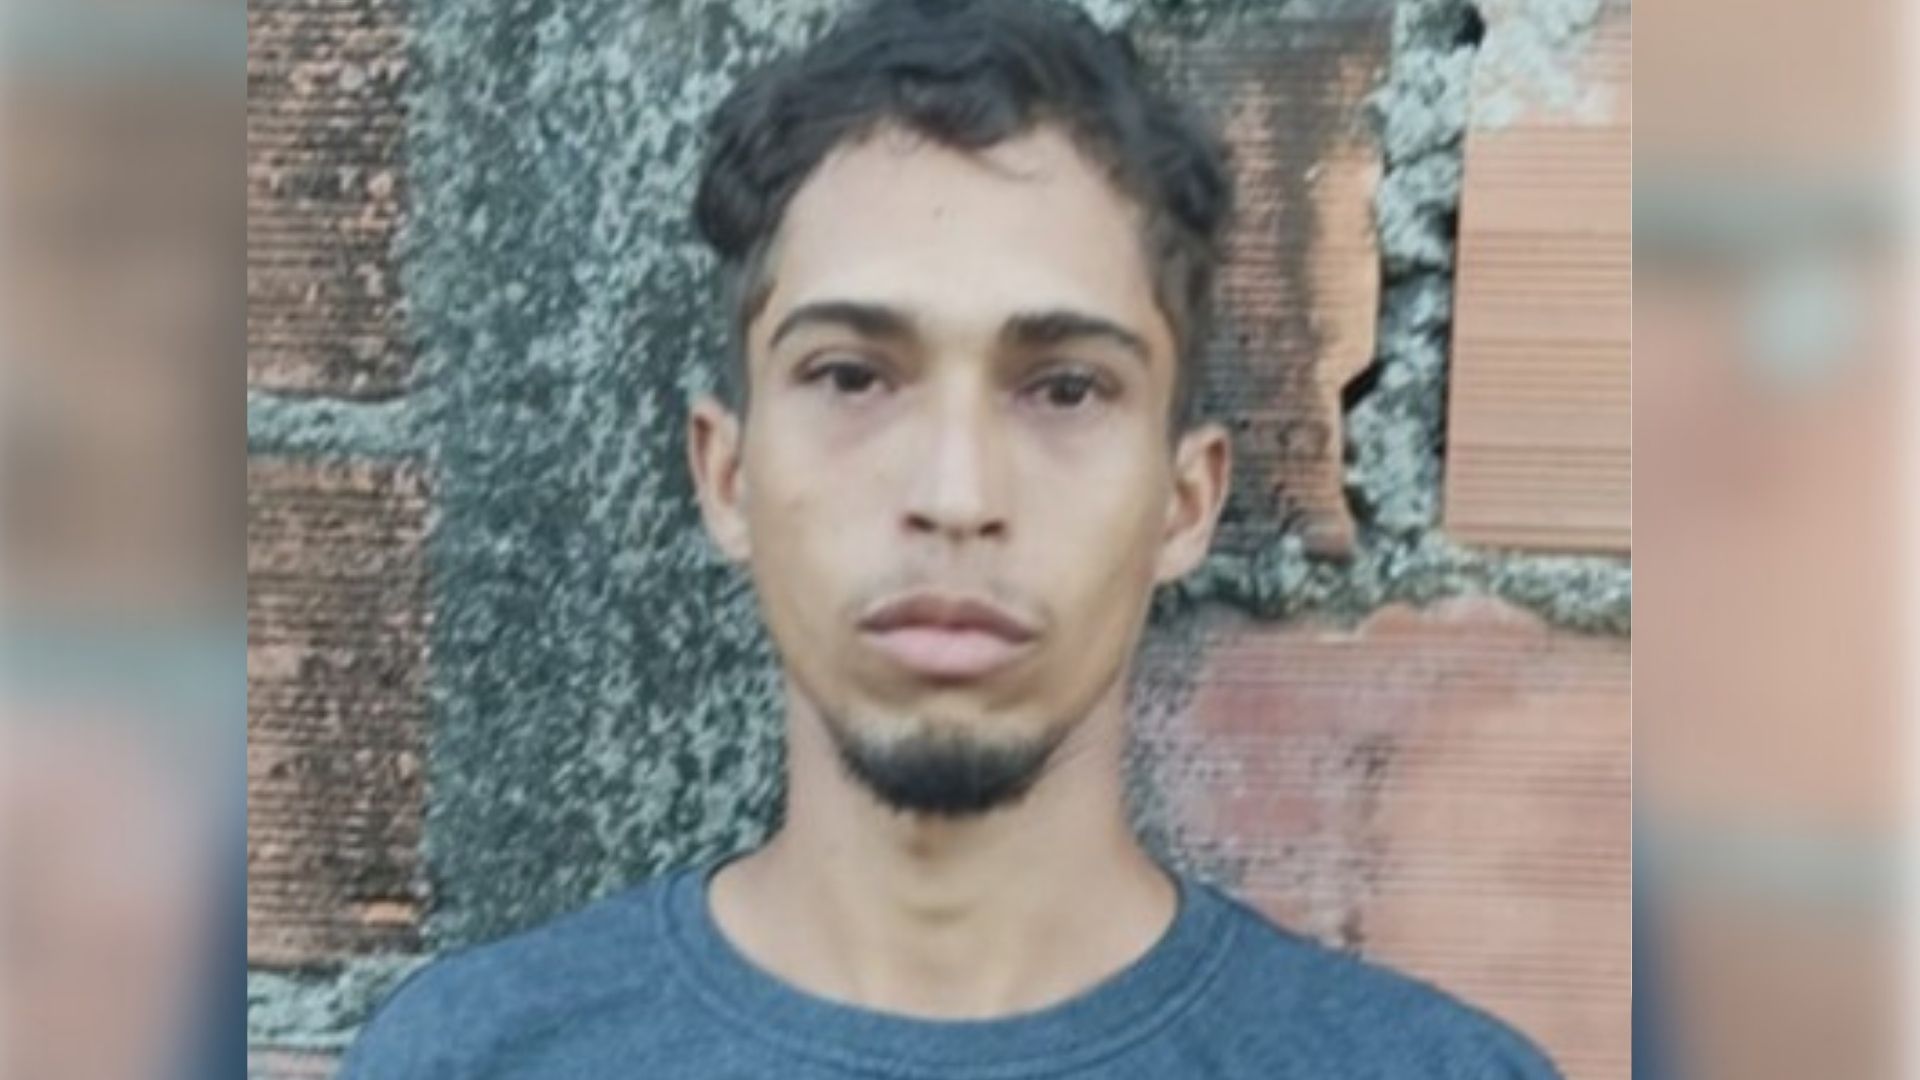 Lucas Ferreira Macena, de 22 anos, possuía mandado de prisão por envolvimento no triplo assassinato e ocultação de cadáver de três jovens, localizados em covas rasas em uma plantação de eucalipto